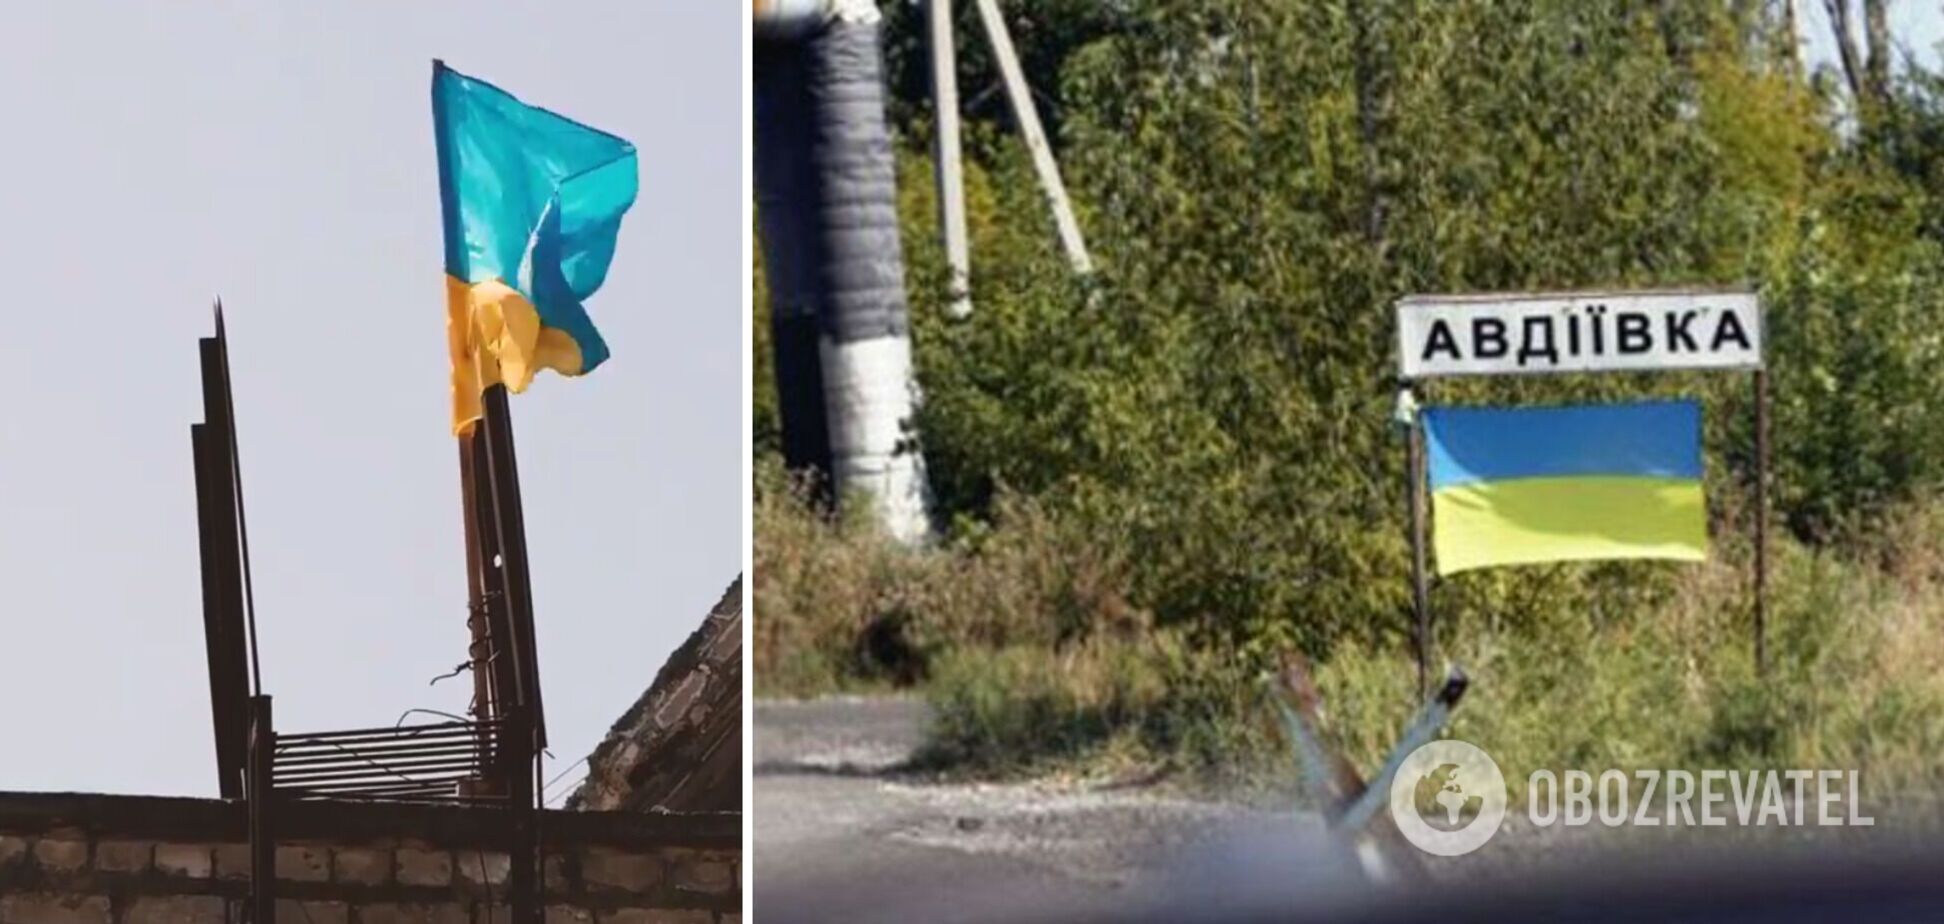 Авдеевка – это Украина! Защитники установили украинский флаг на многоэтажке возле 'нуля'